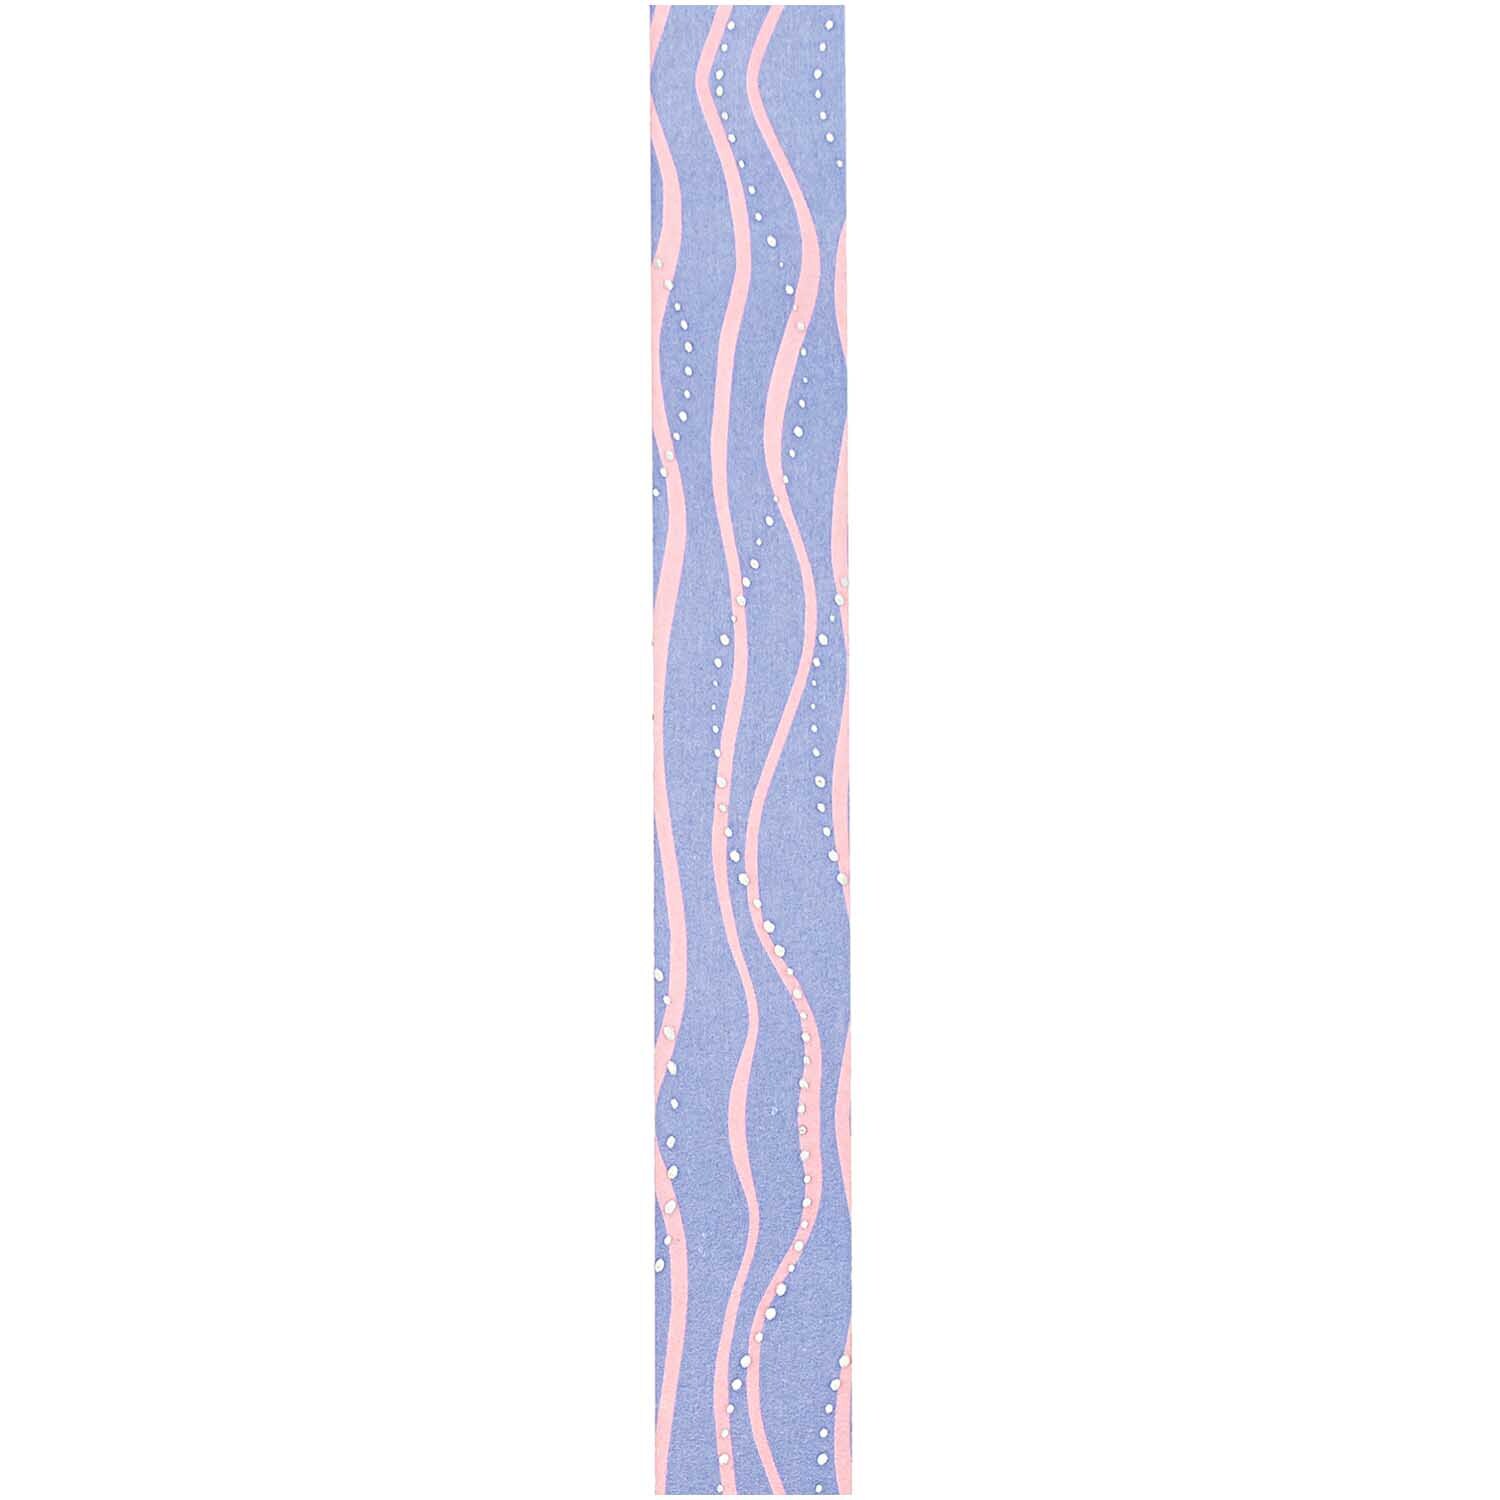 Paper Poetry Tape Mermaid Wellen blau-rosa 1,5cm 10m